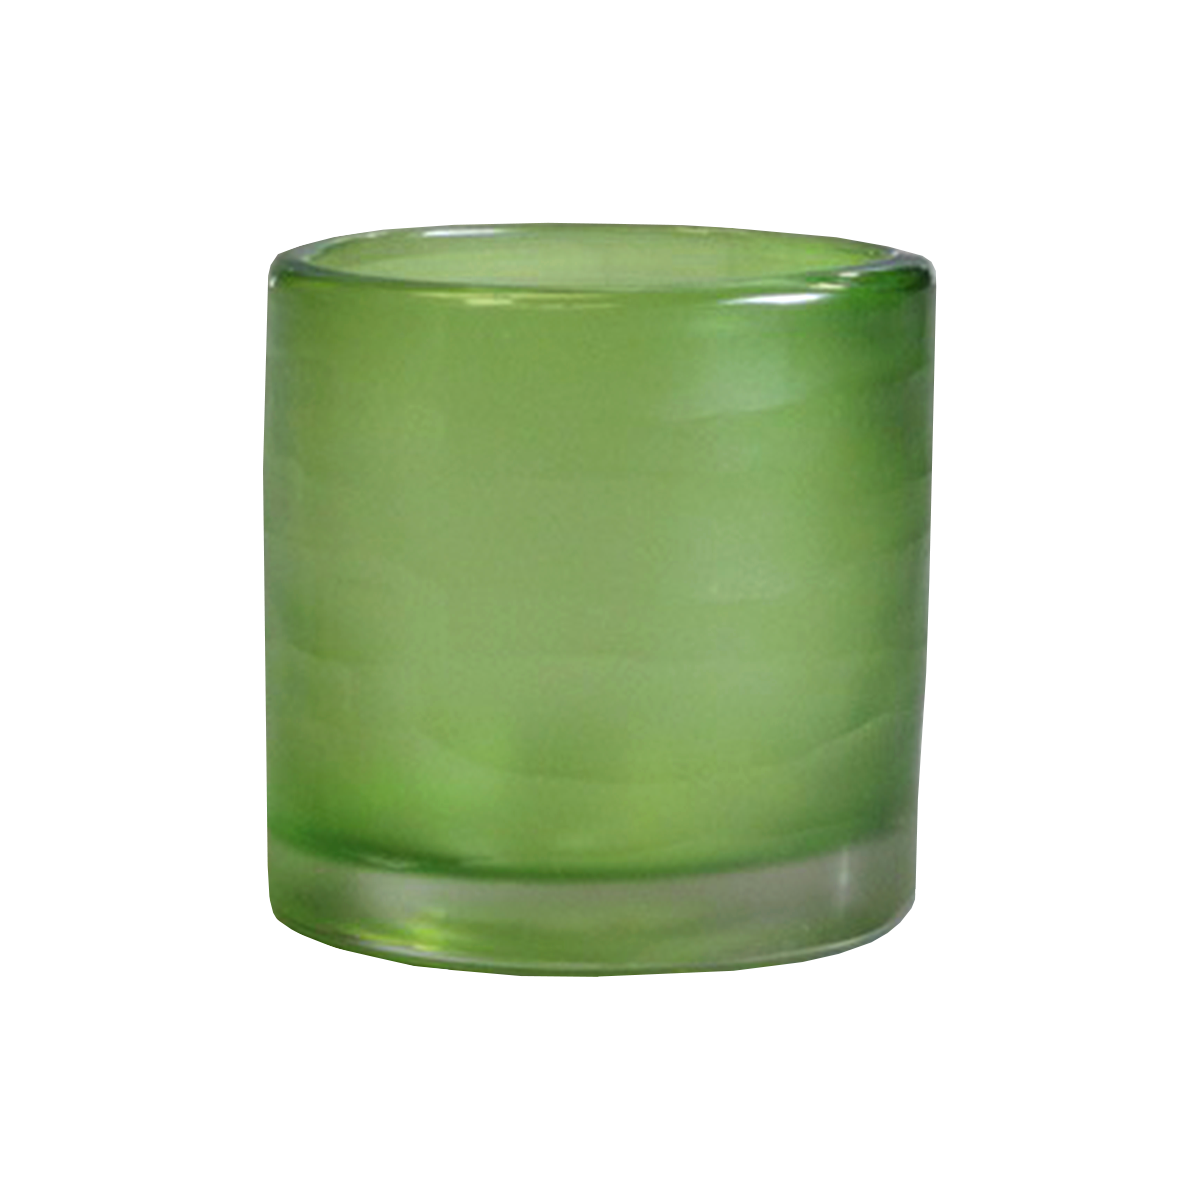 Carved Cylinder Grass Green Vase